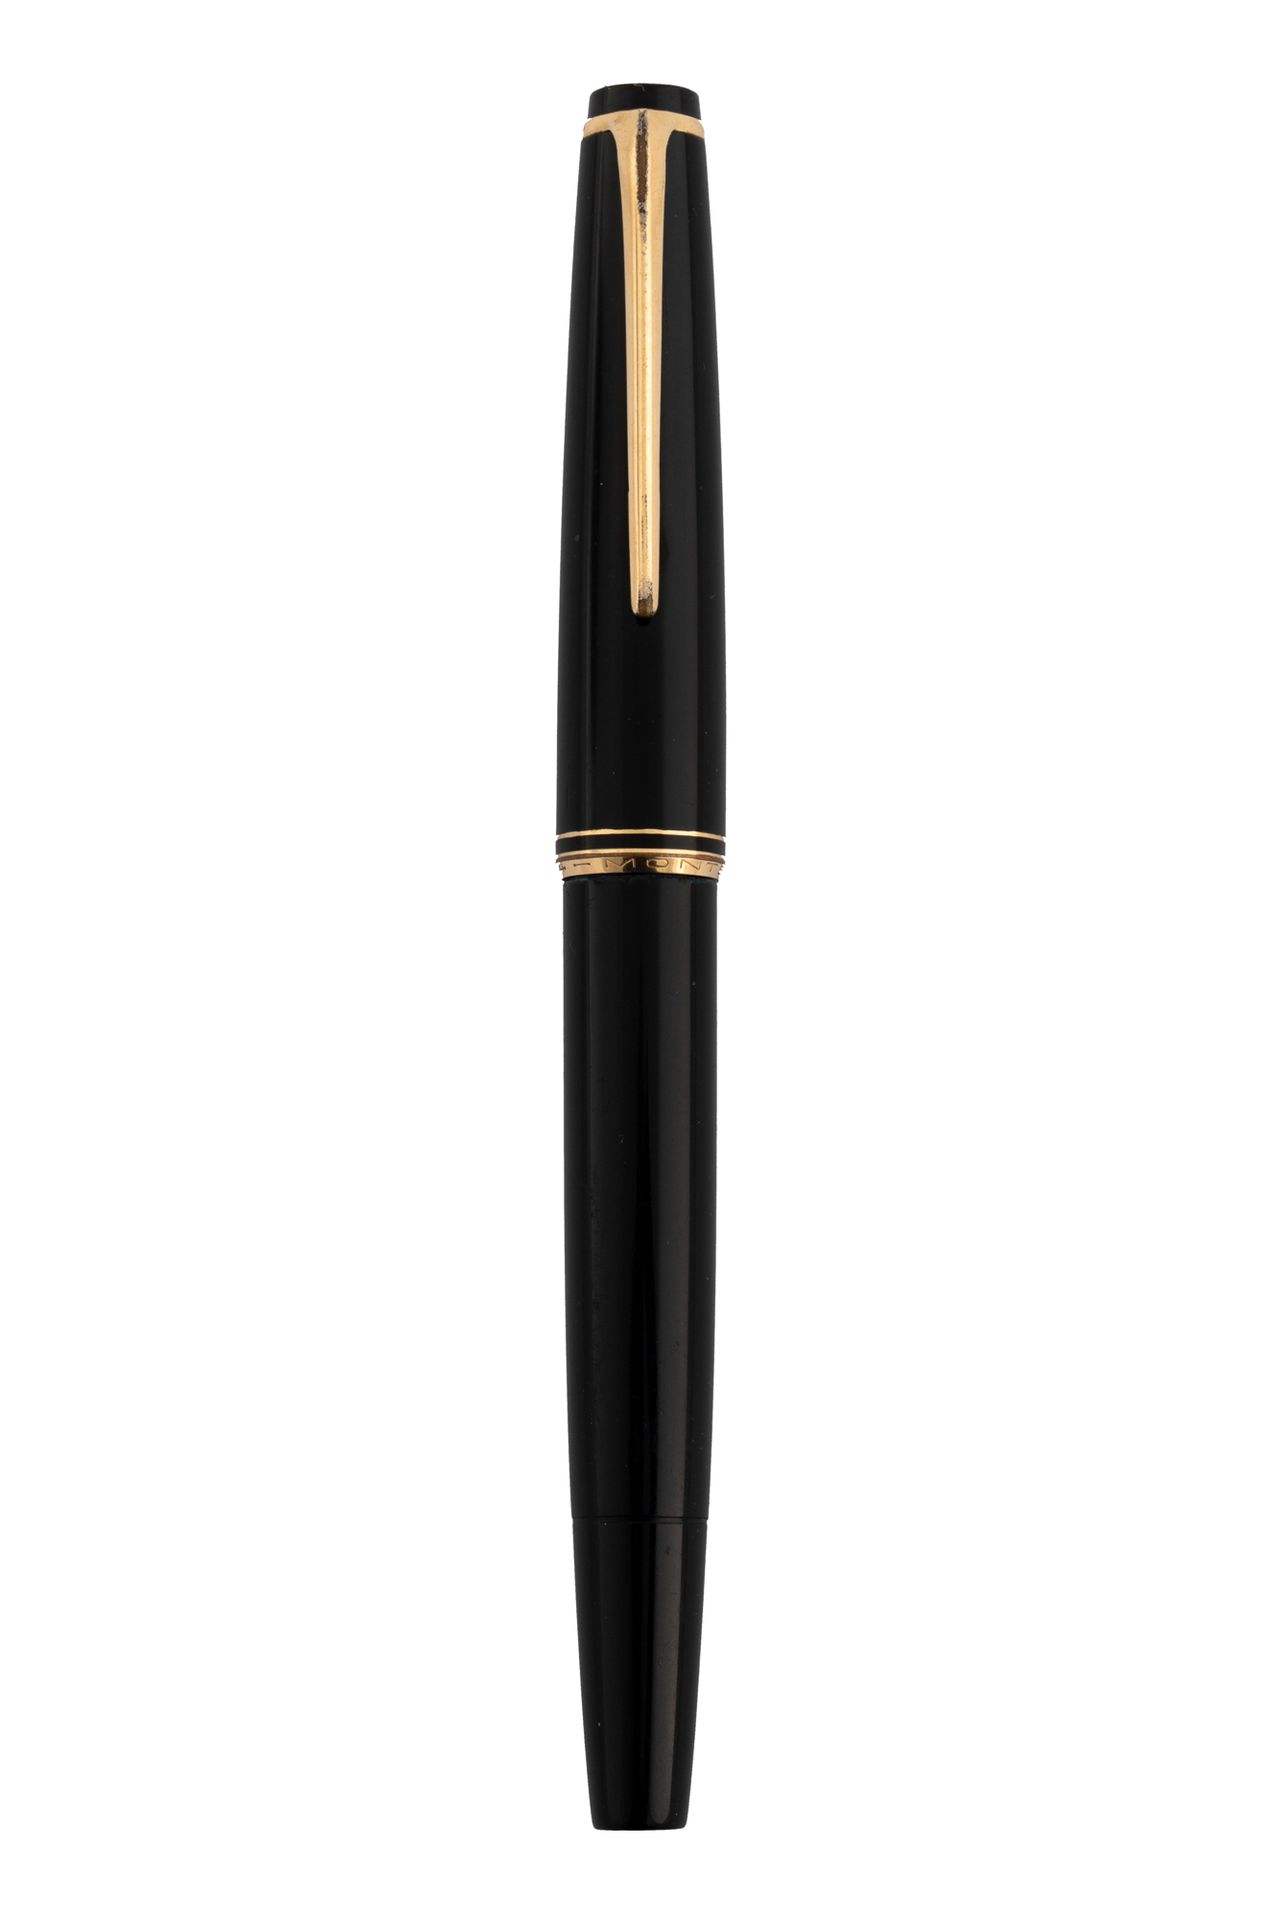 MONTBLANC COLLECTION 树脂钢笔，活塞式笔芯，金色笔尖，镀金笔身。